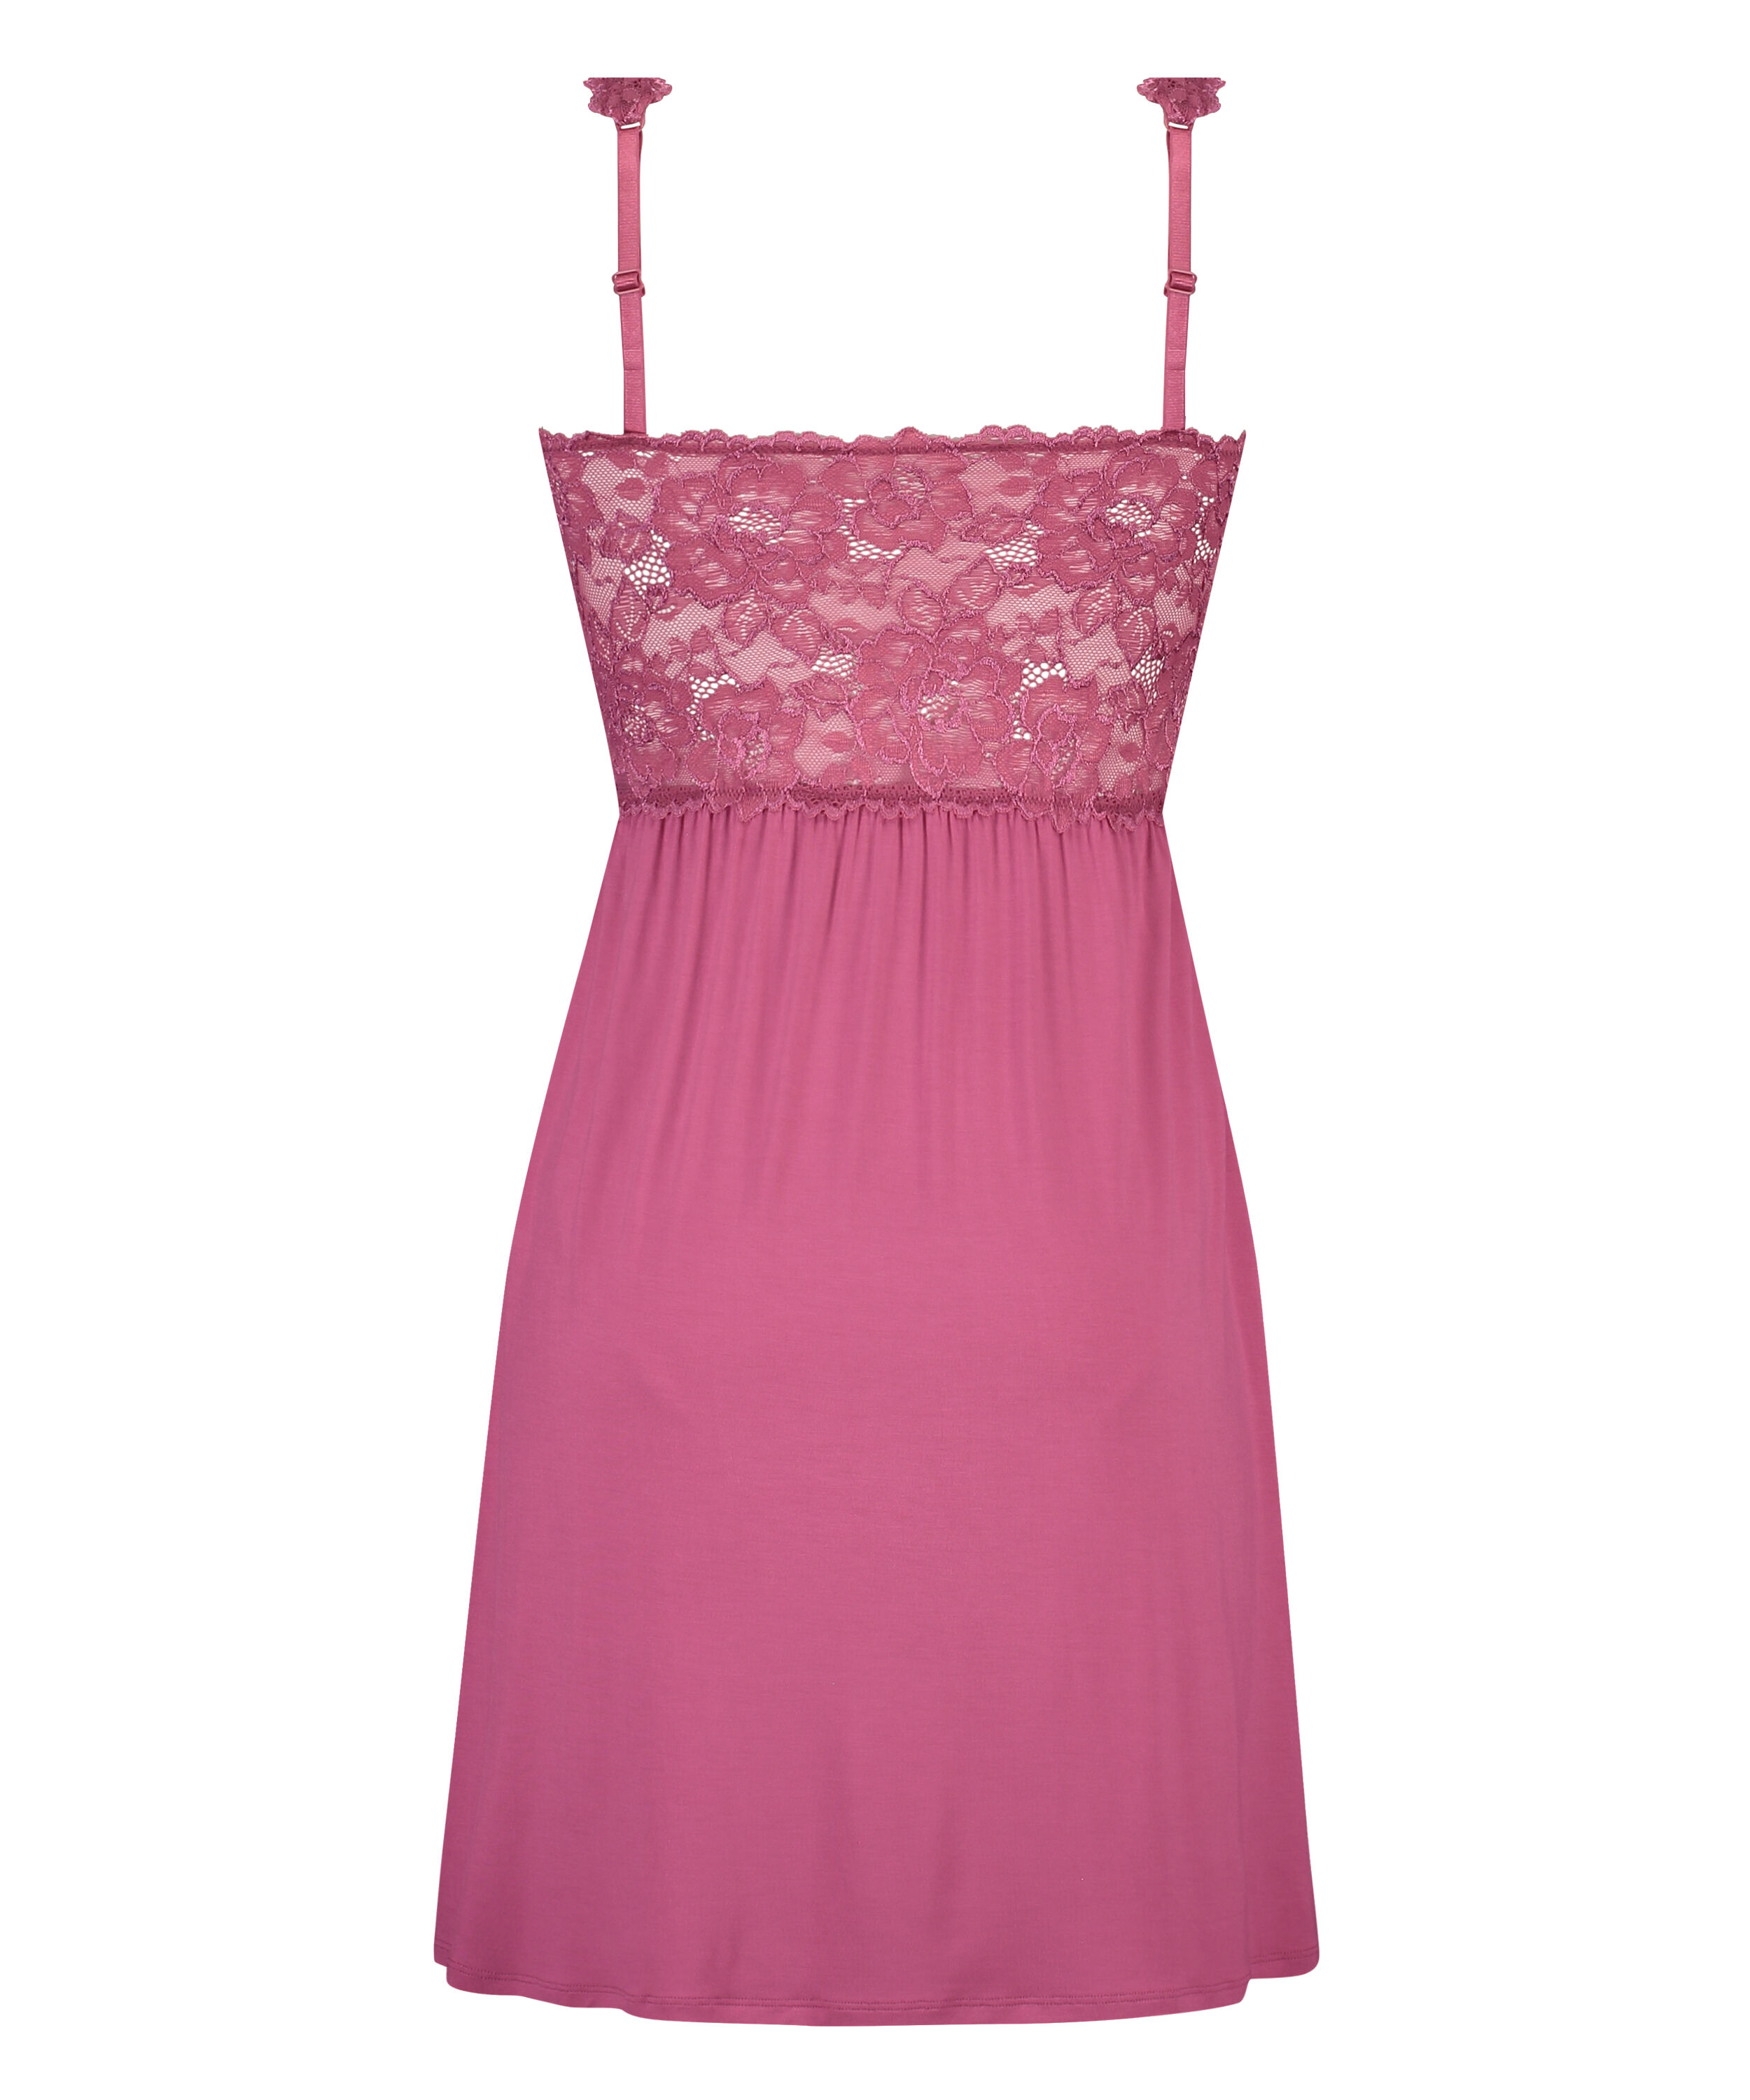 Nora Lace Slip Dress for €29.99 - Slip ...